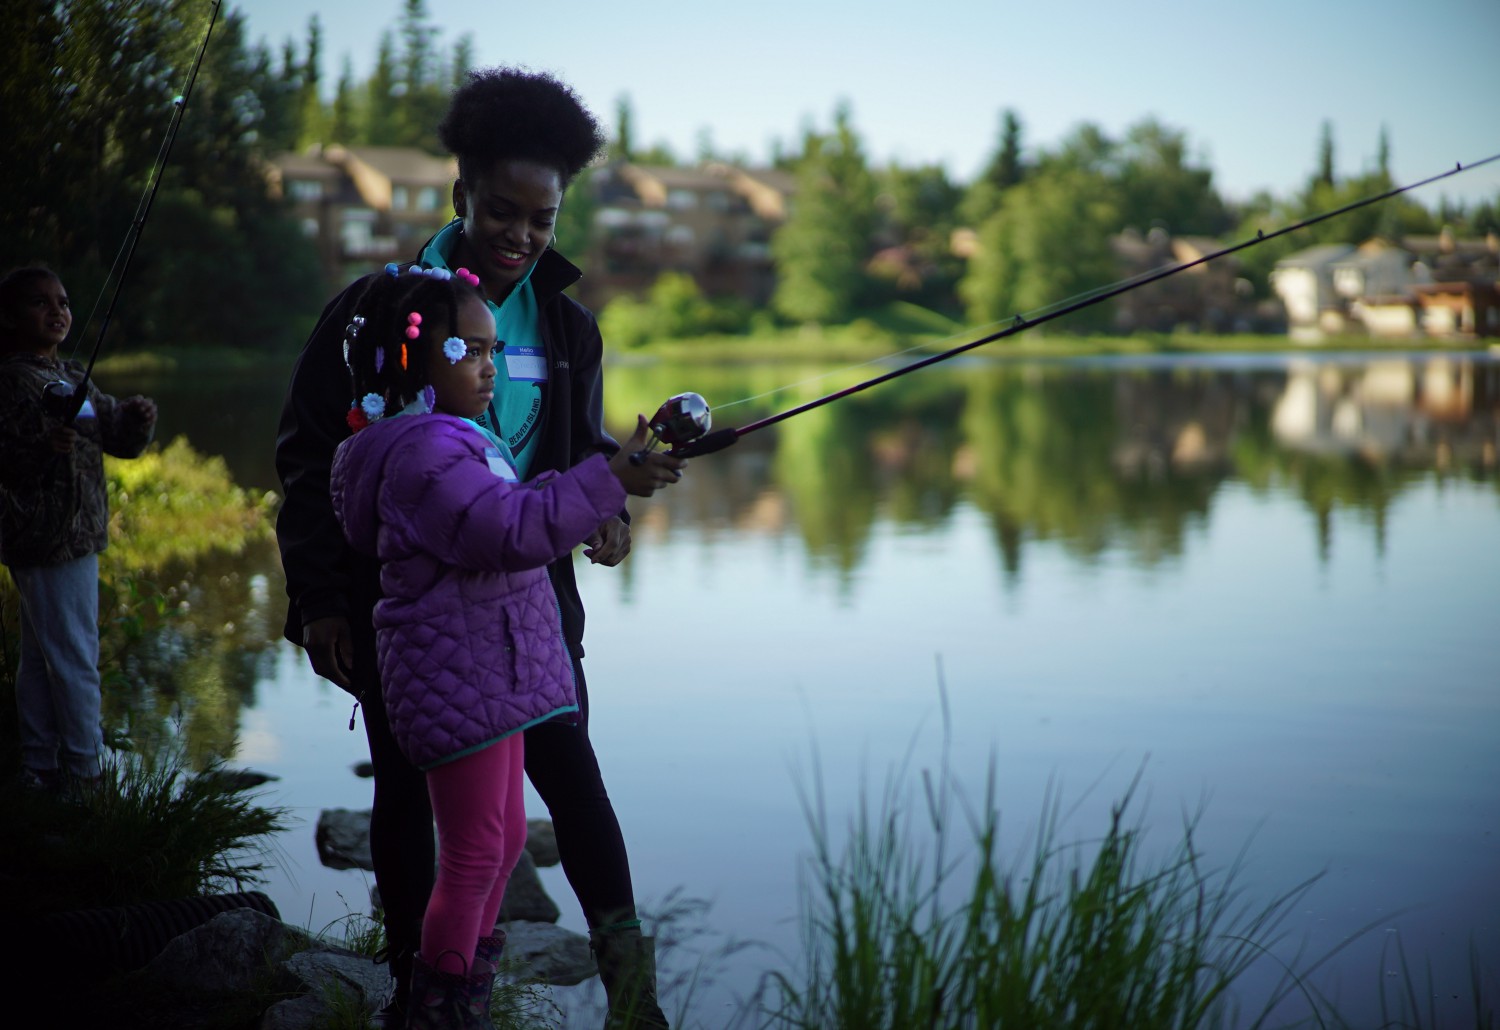 Kids fishing at a lake